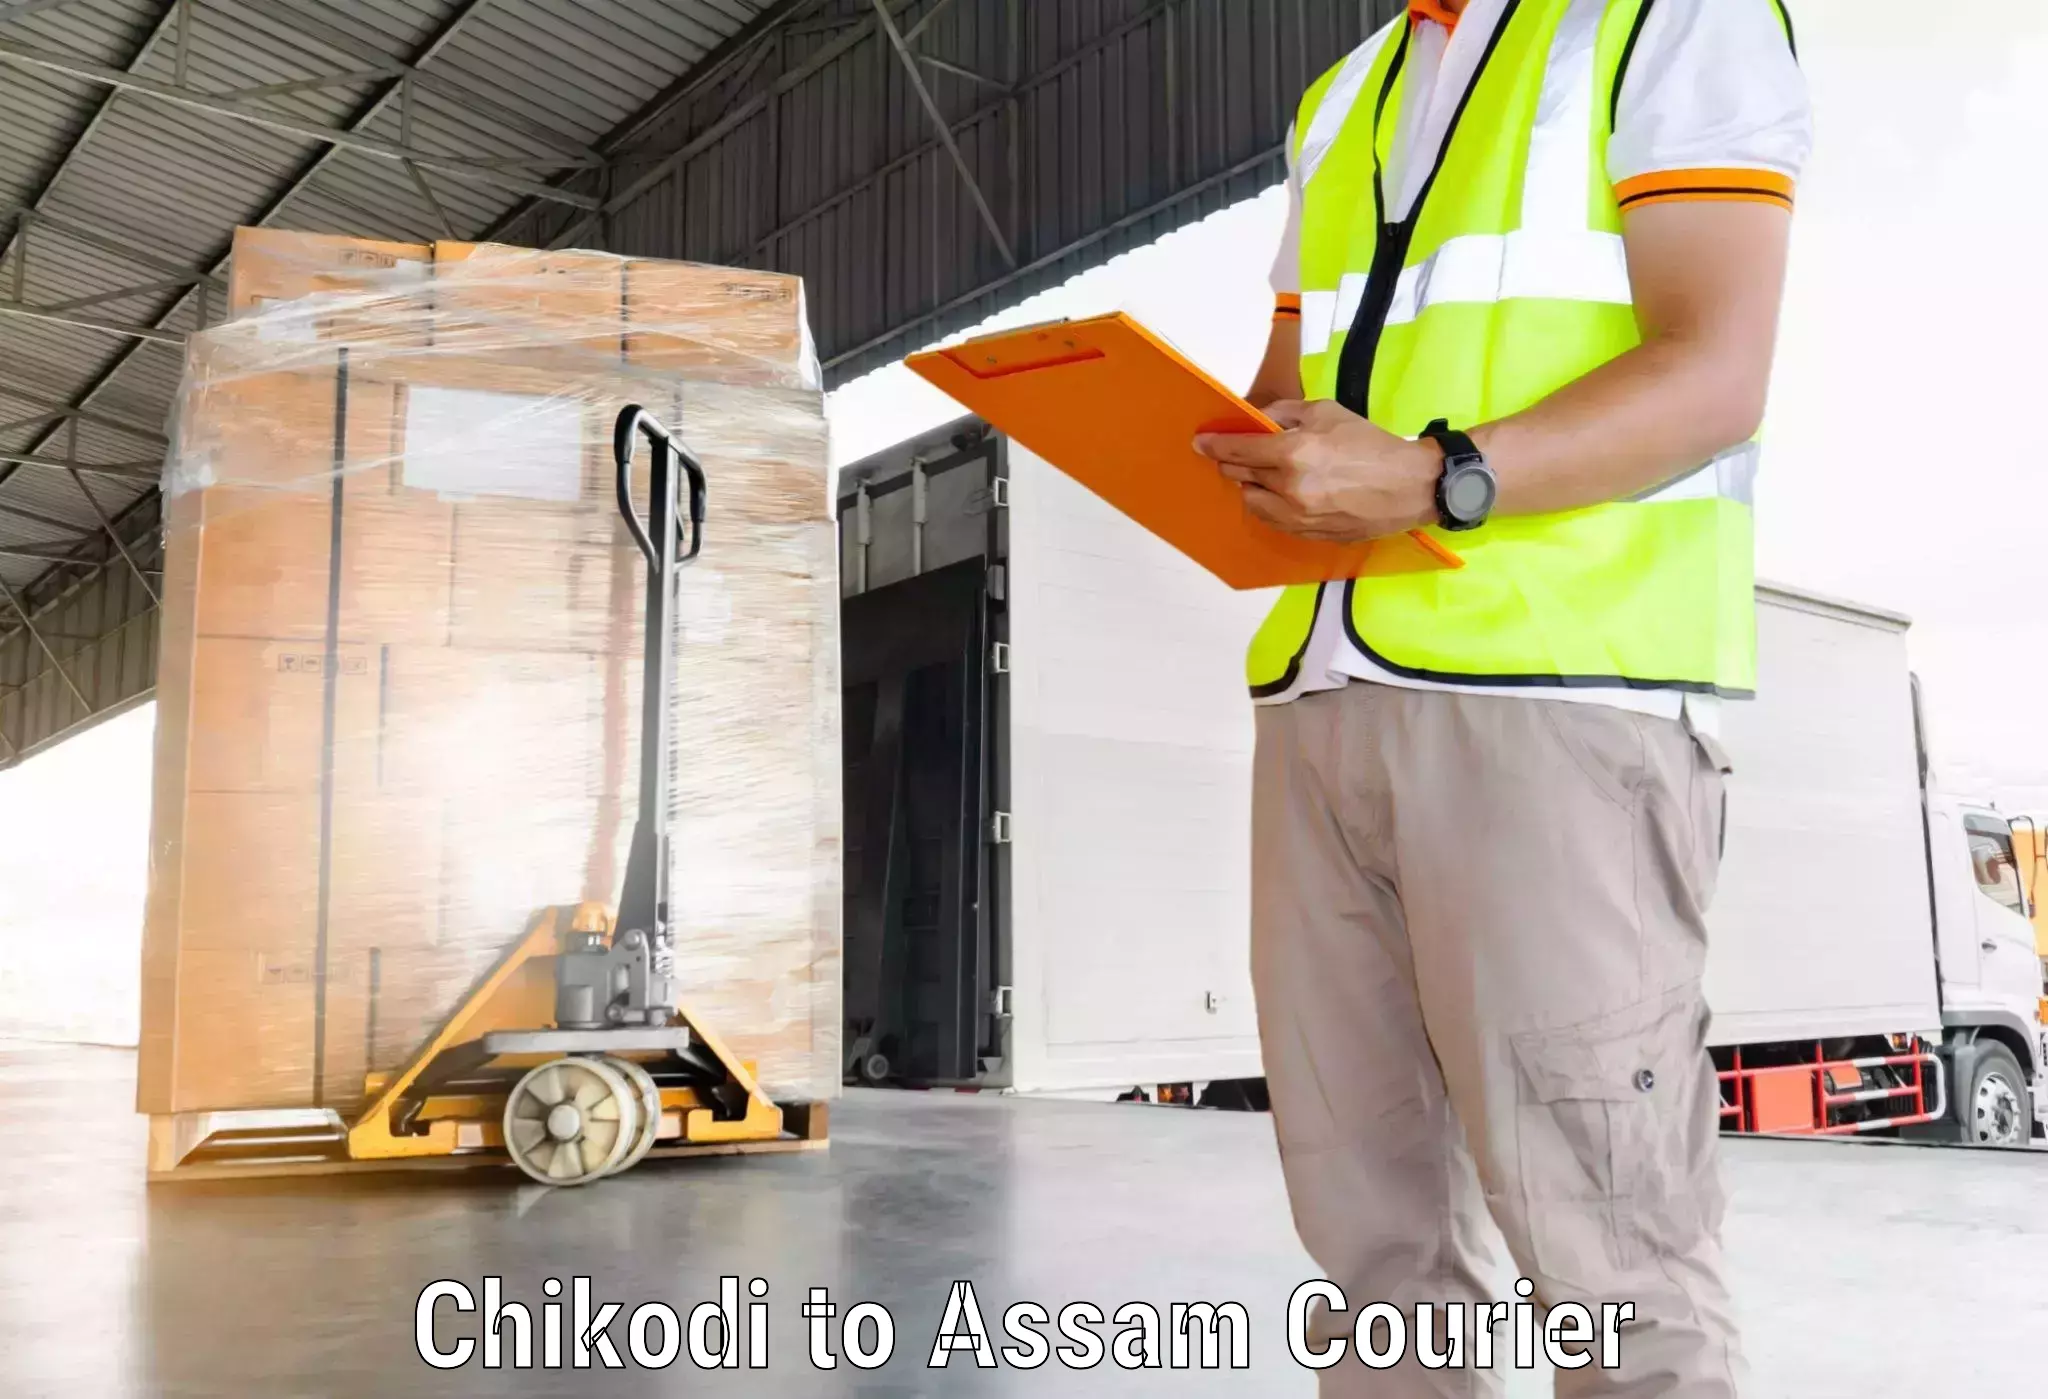 Cargo delivery service Chikodi to Jonai